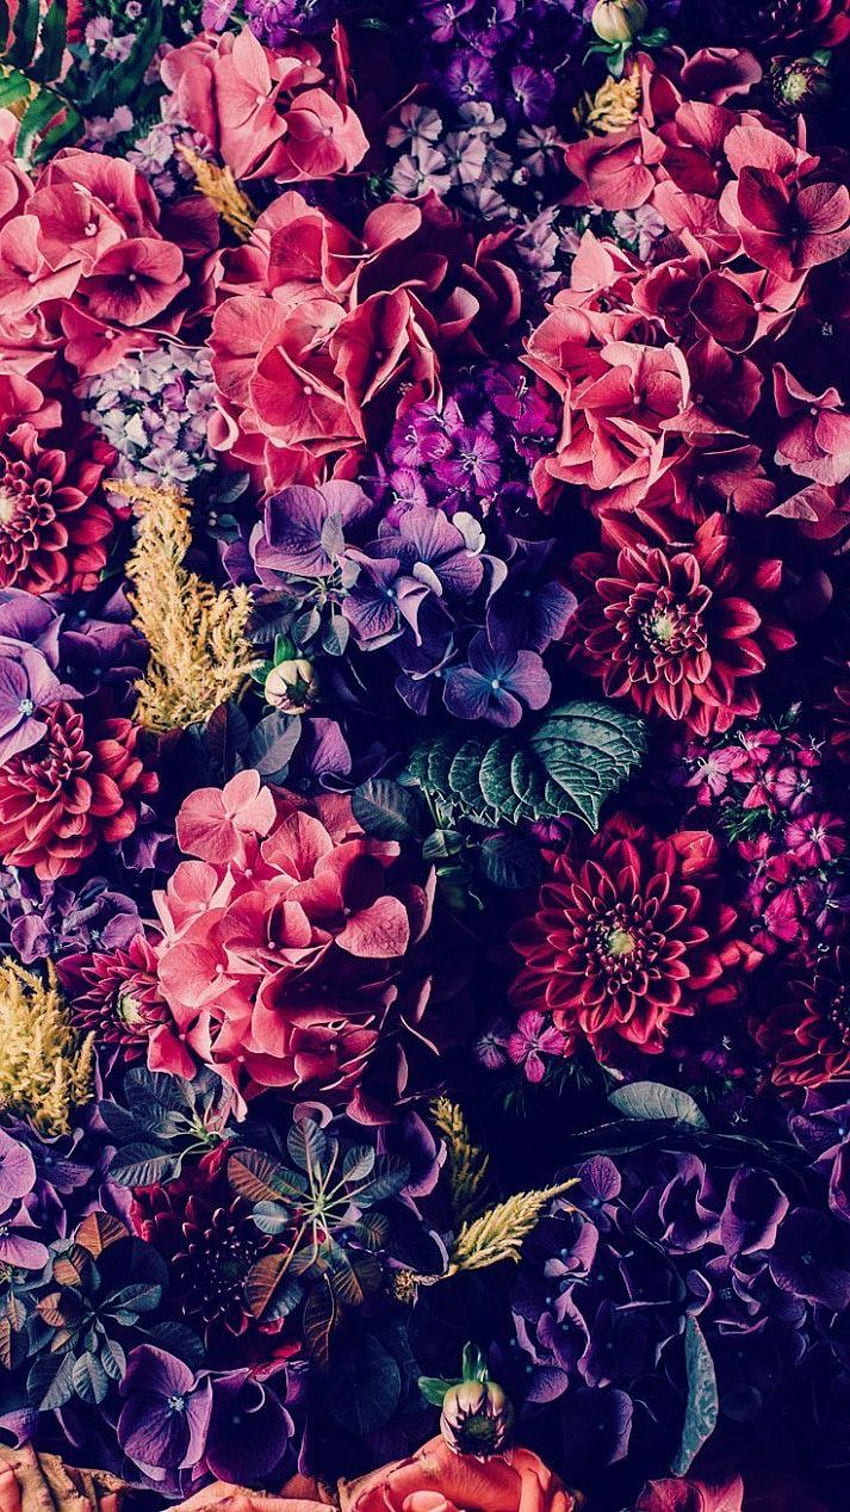 Purple flowers design HD wallpapers | Pxfuel